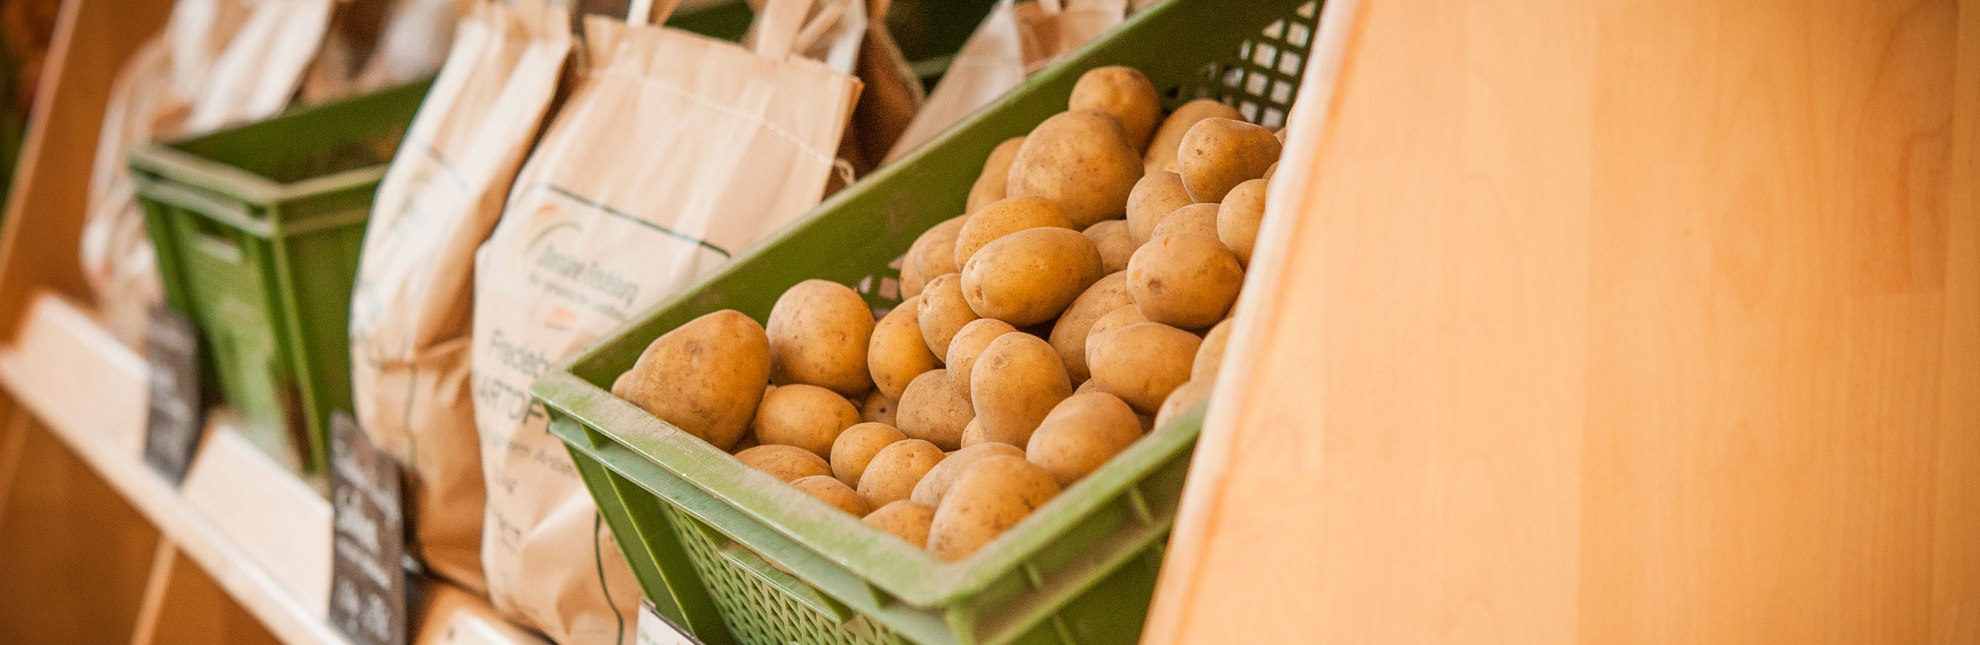 Hofladen mit Kartoffeln aus eigenem Anbau, © Nicole Franke/HLMS